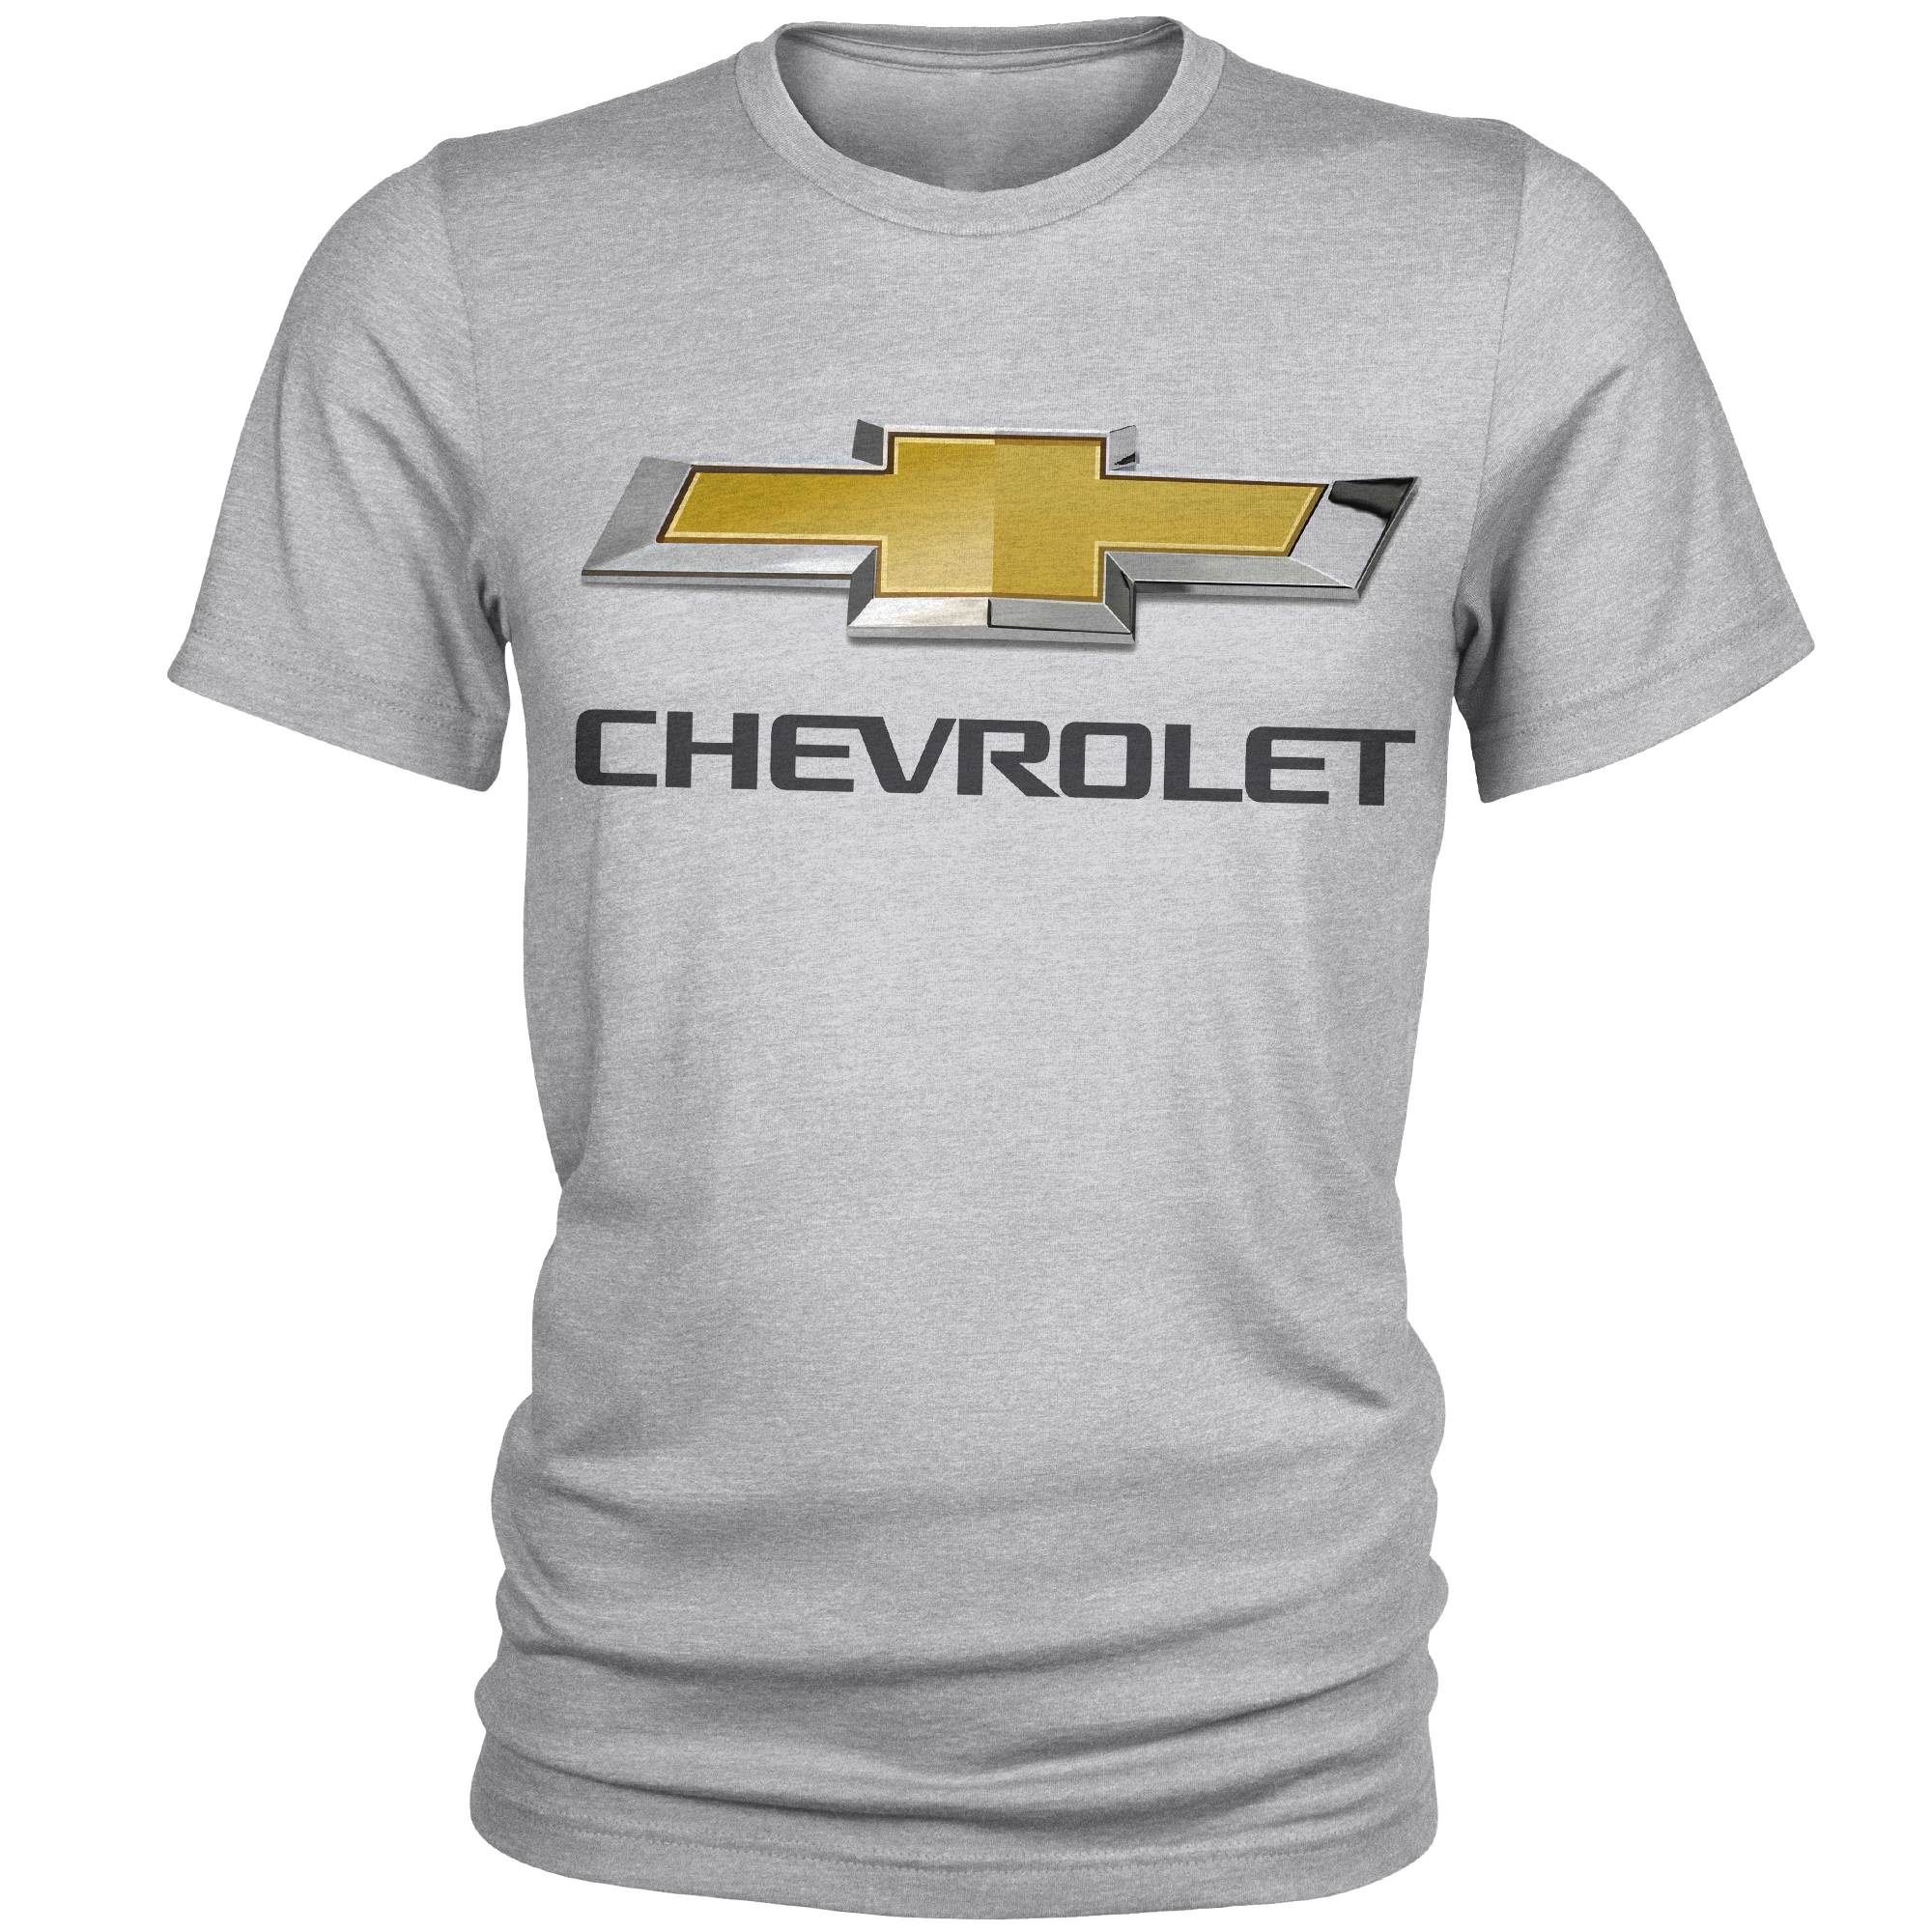 تی شرت مردانه مدل Chevrolet کد A108